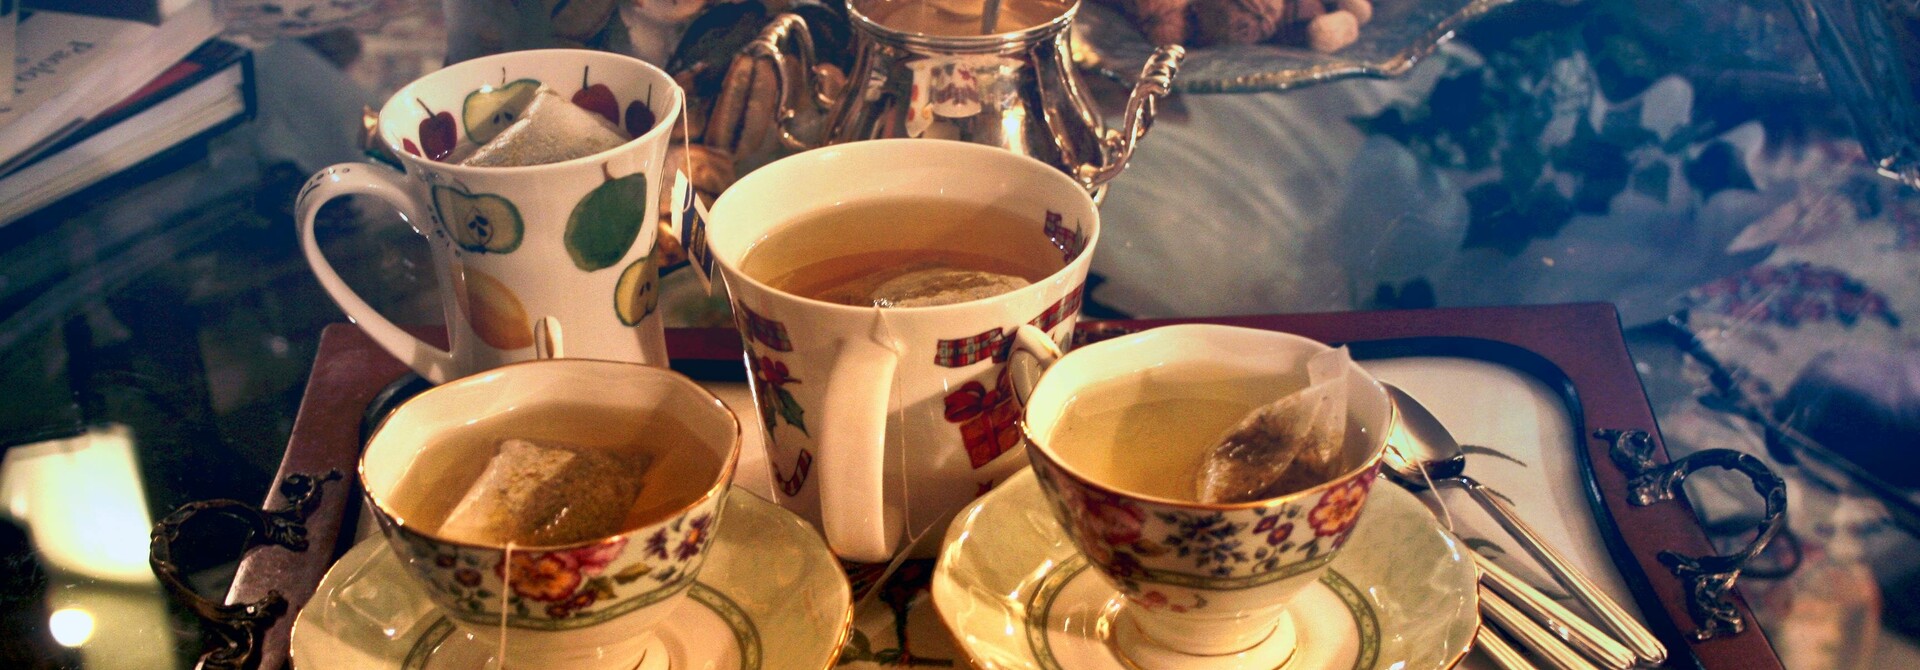 Wat zijn de lekkerste Engelse theeën?